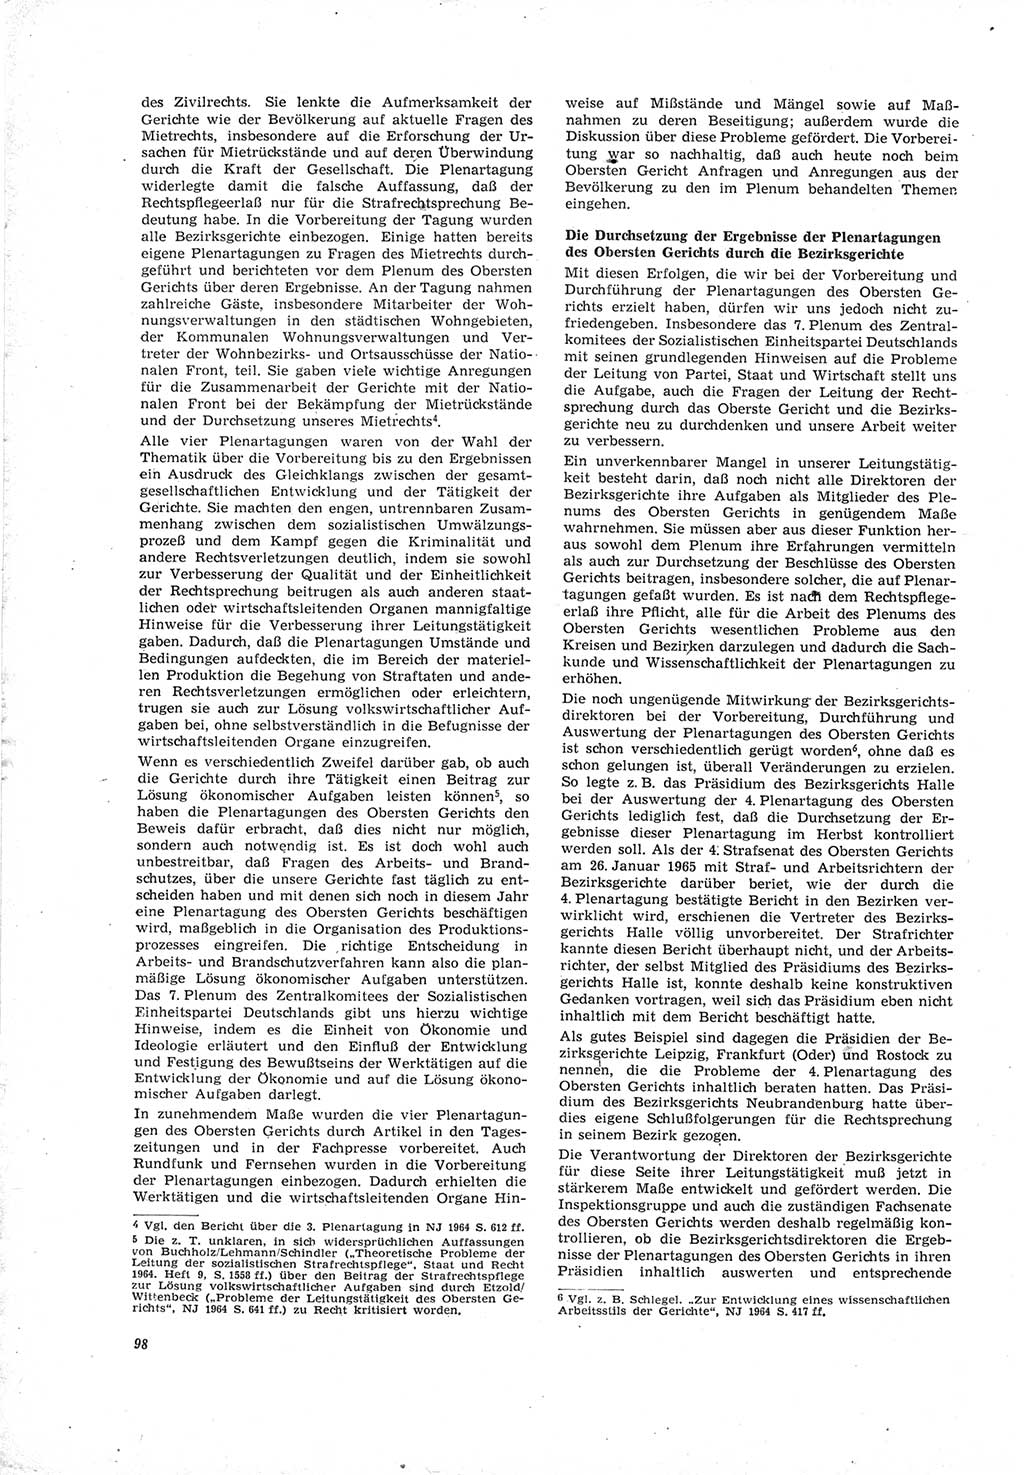 Neue Justiz (NJ), Zeitschrift für Recht und Rechtswissenschaft [Deutsche Demokratische Republik (DDR)], 19. Jahrgang 1965, Seite 98 (NJ DDR 1965, S. 98)